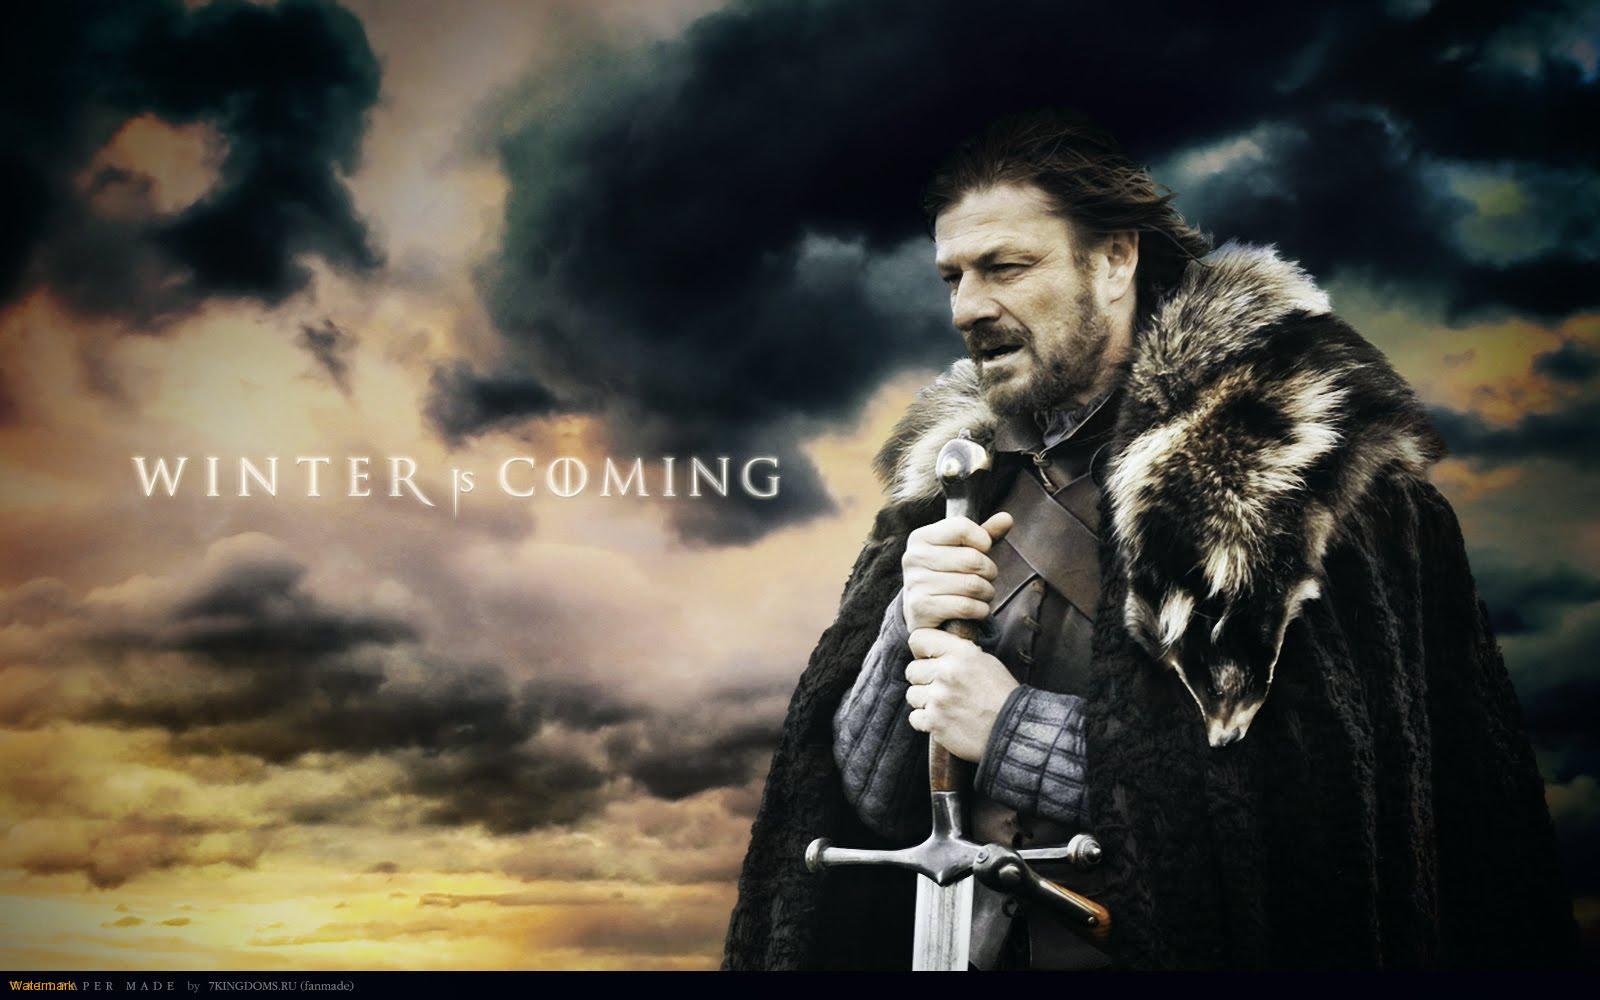 Salida Zona Centro. Ruta de los Vientos del Norte. Sábado 17 NOVIEMBRE Eddard-Ed-Stark-Winter-is-Coming-1